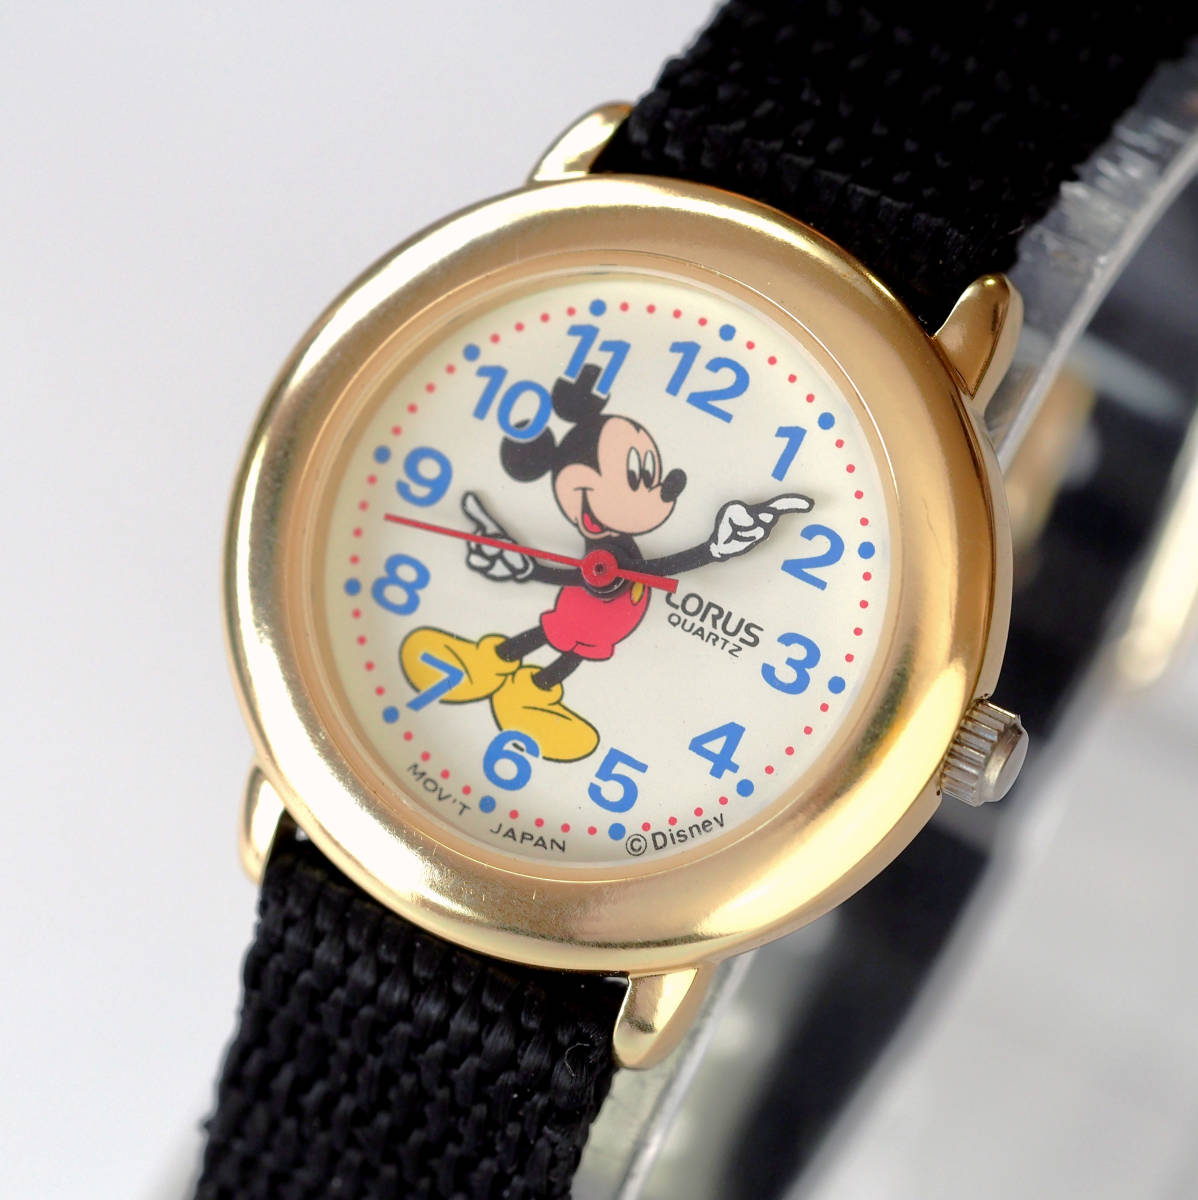  прекрасный товар батарейка новый товар SEIKO 2 шт. комплект Mickey Mouse Seiko роллер s Disney наручные часы LORUS MIckey Mouse рабочее состояние подтверждено Disney золотой цвет редкий 